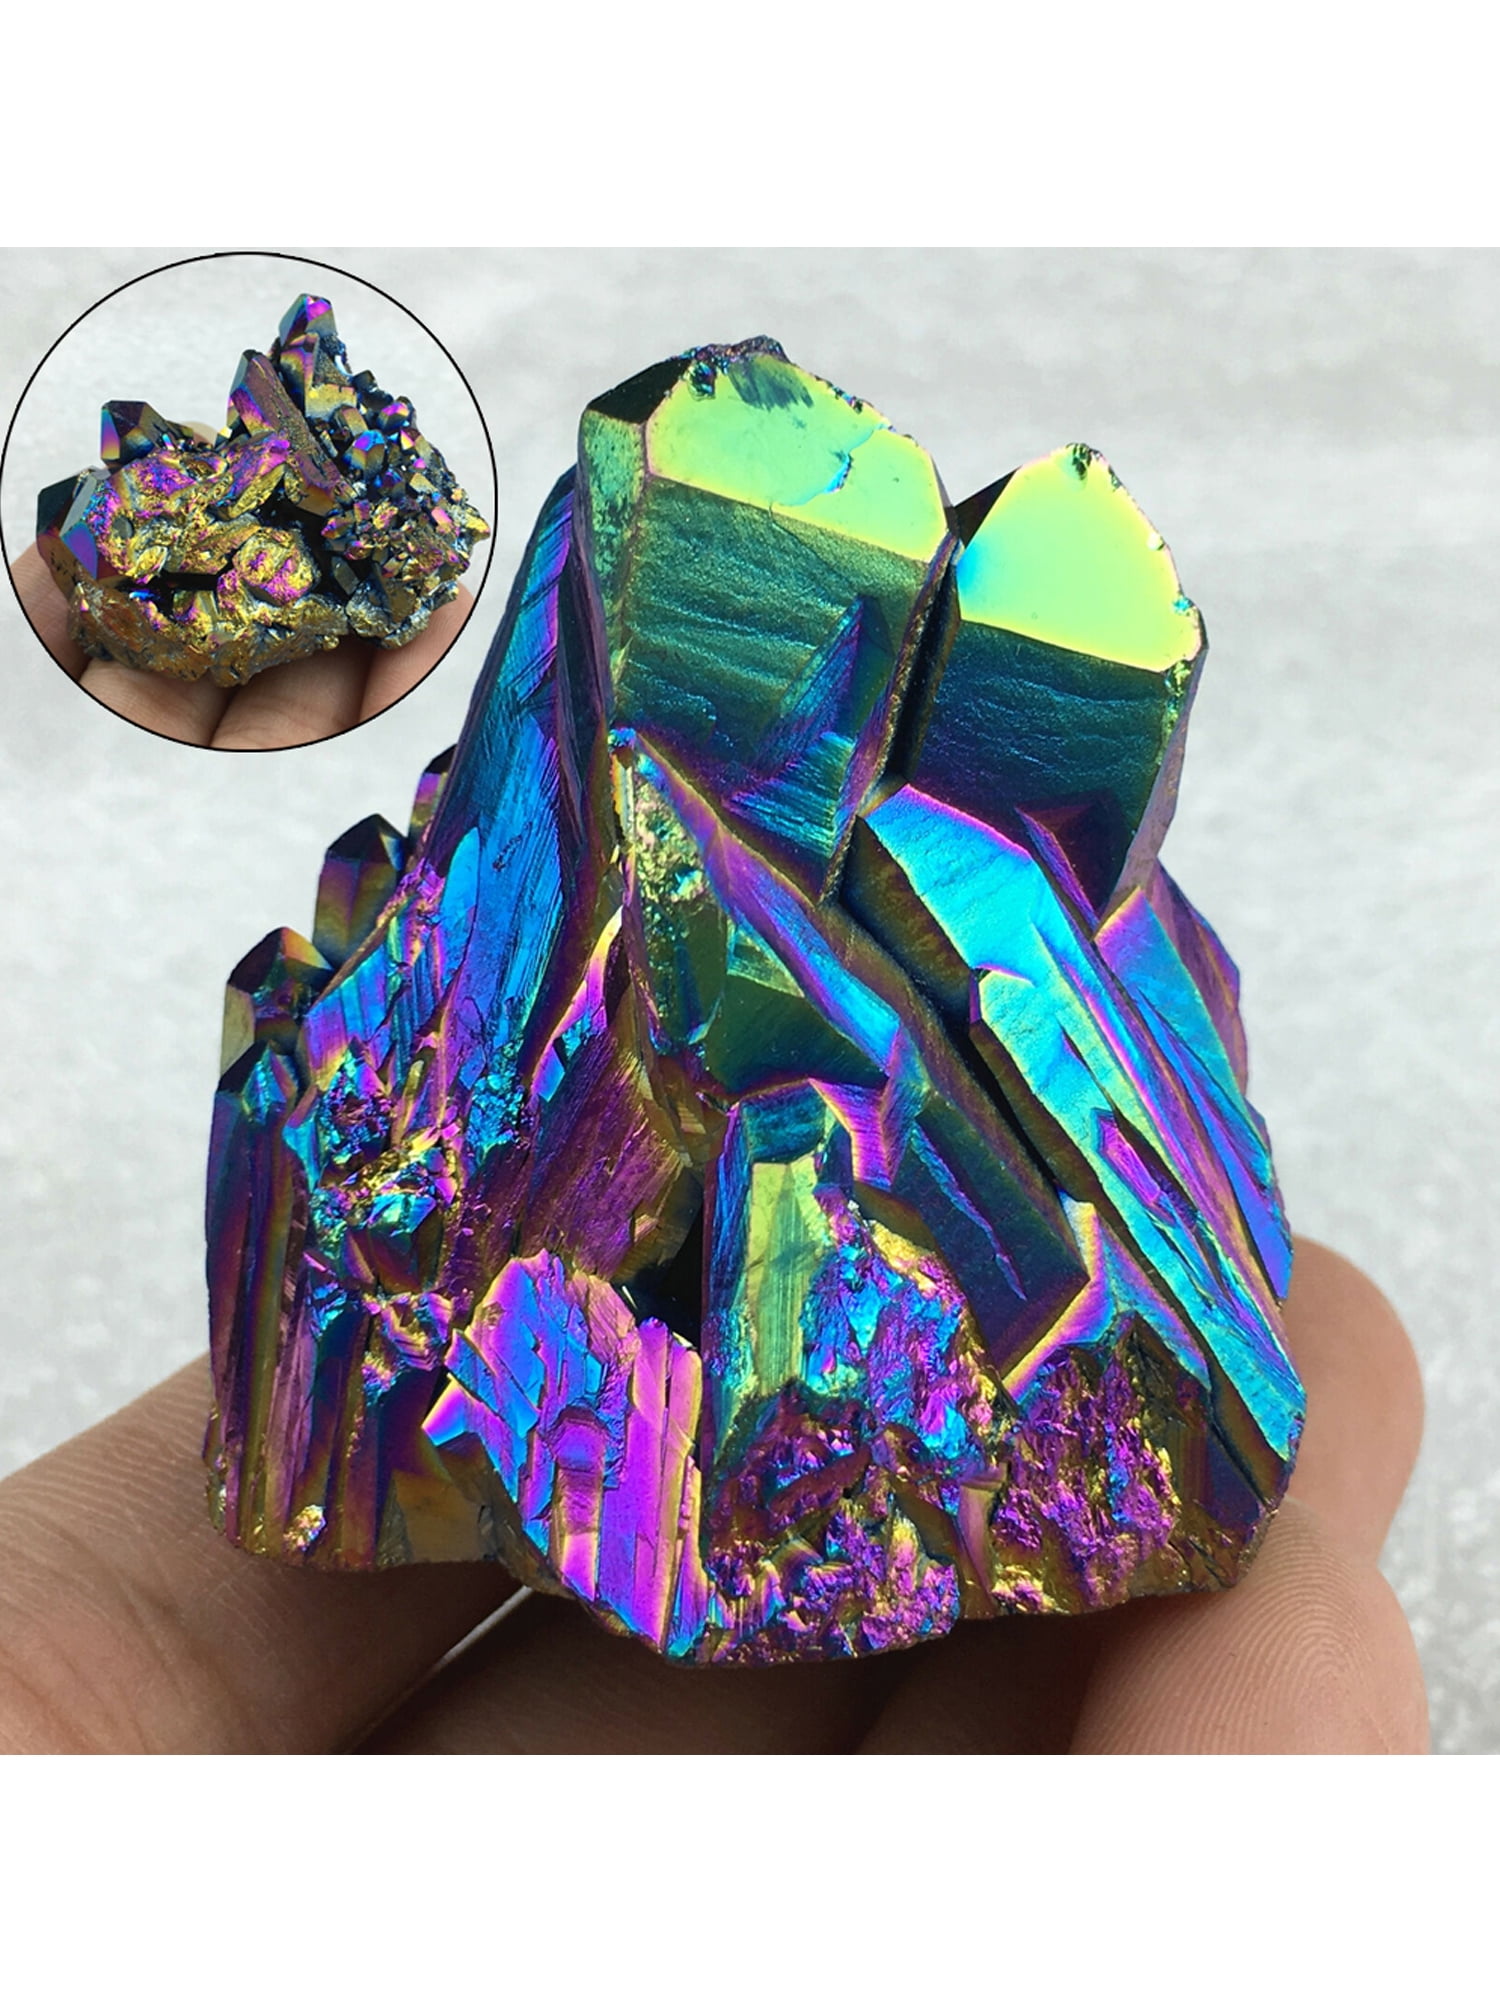 Natural Quartz Crystal Stone Rainbow Titanium Cluster Mineral Specimen Healing 